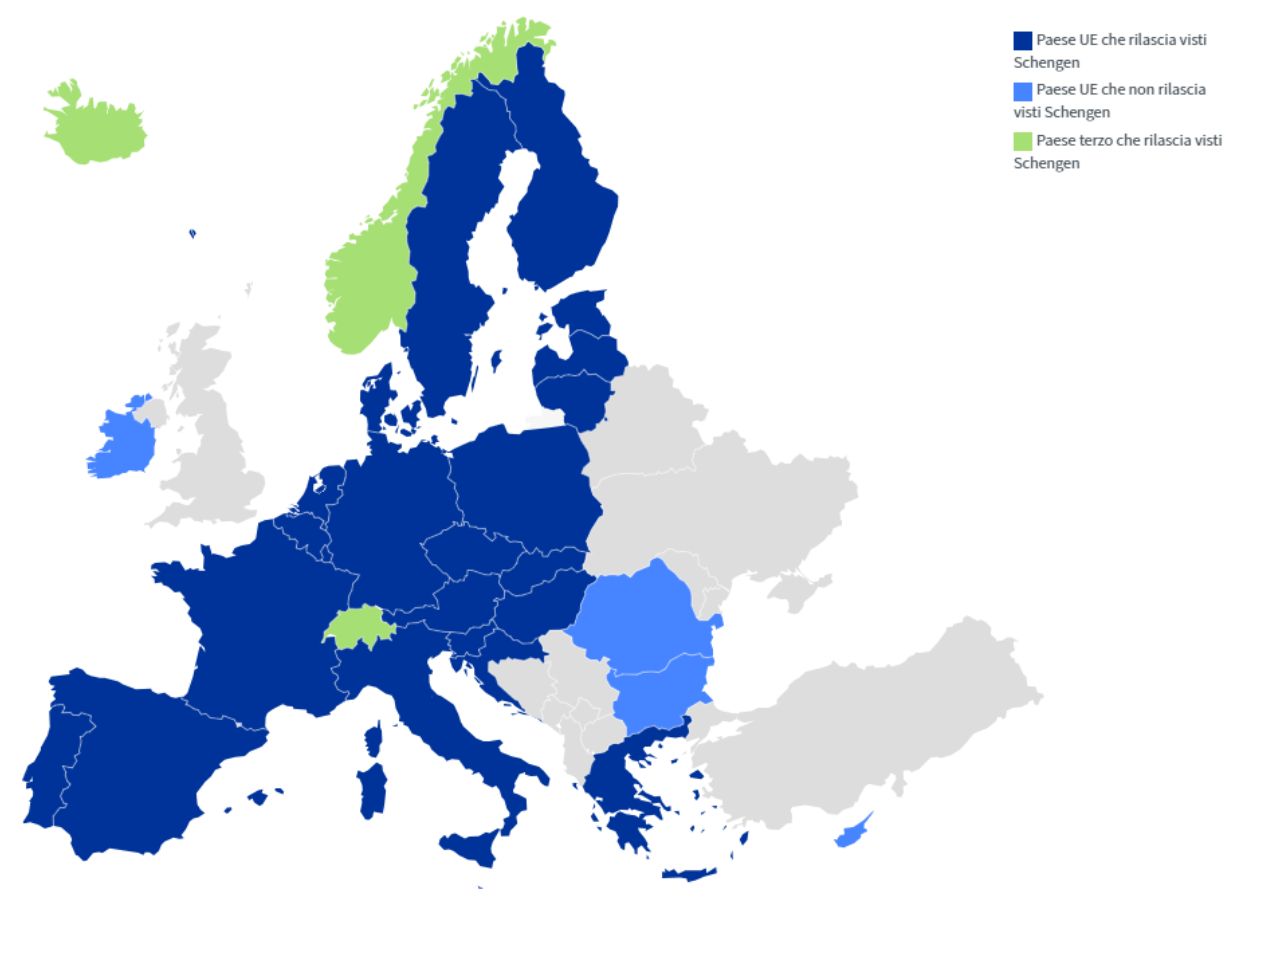 Allarme terrorismo, l’Italia (e parte dell’Europa) si blinda: sospesa l’area Schenghen